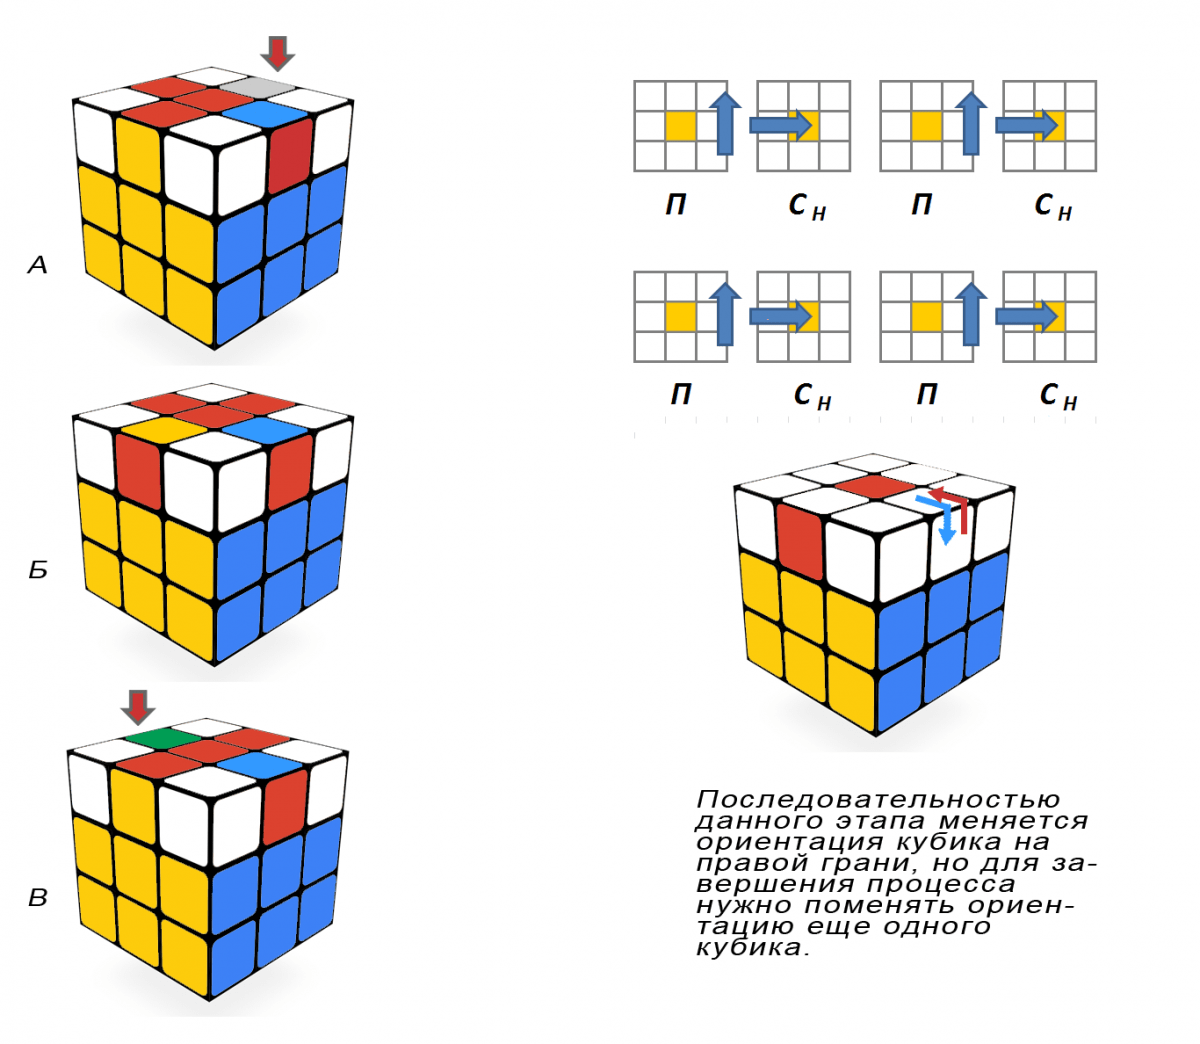 Захватывающие изображения различных комбинаций кубика Рубика